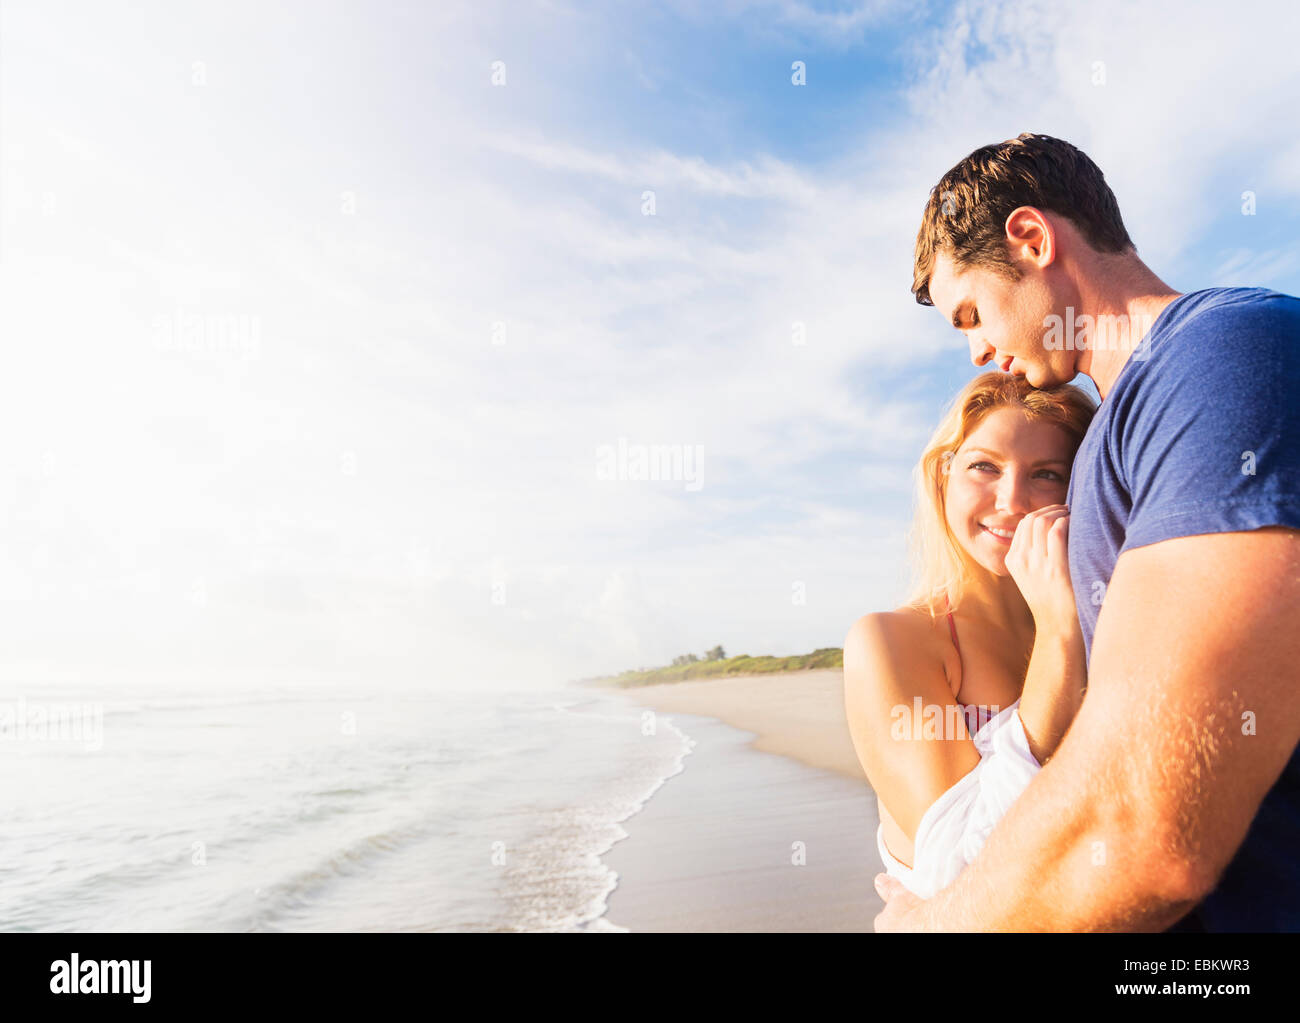 USA, Floride, Jupiter, Portrait of young couple embracing on beach, contre l'arrière-plan de littoral Banque D'Images